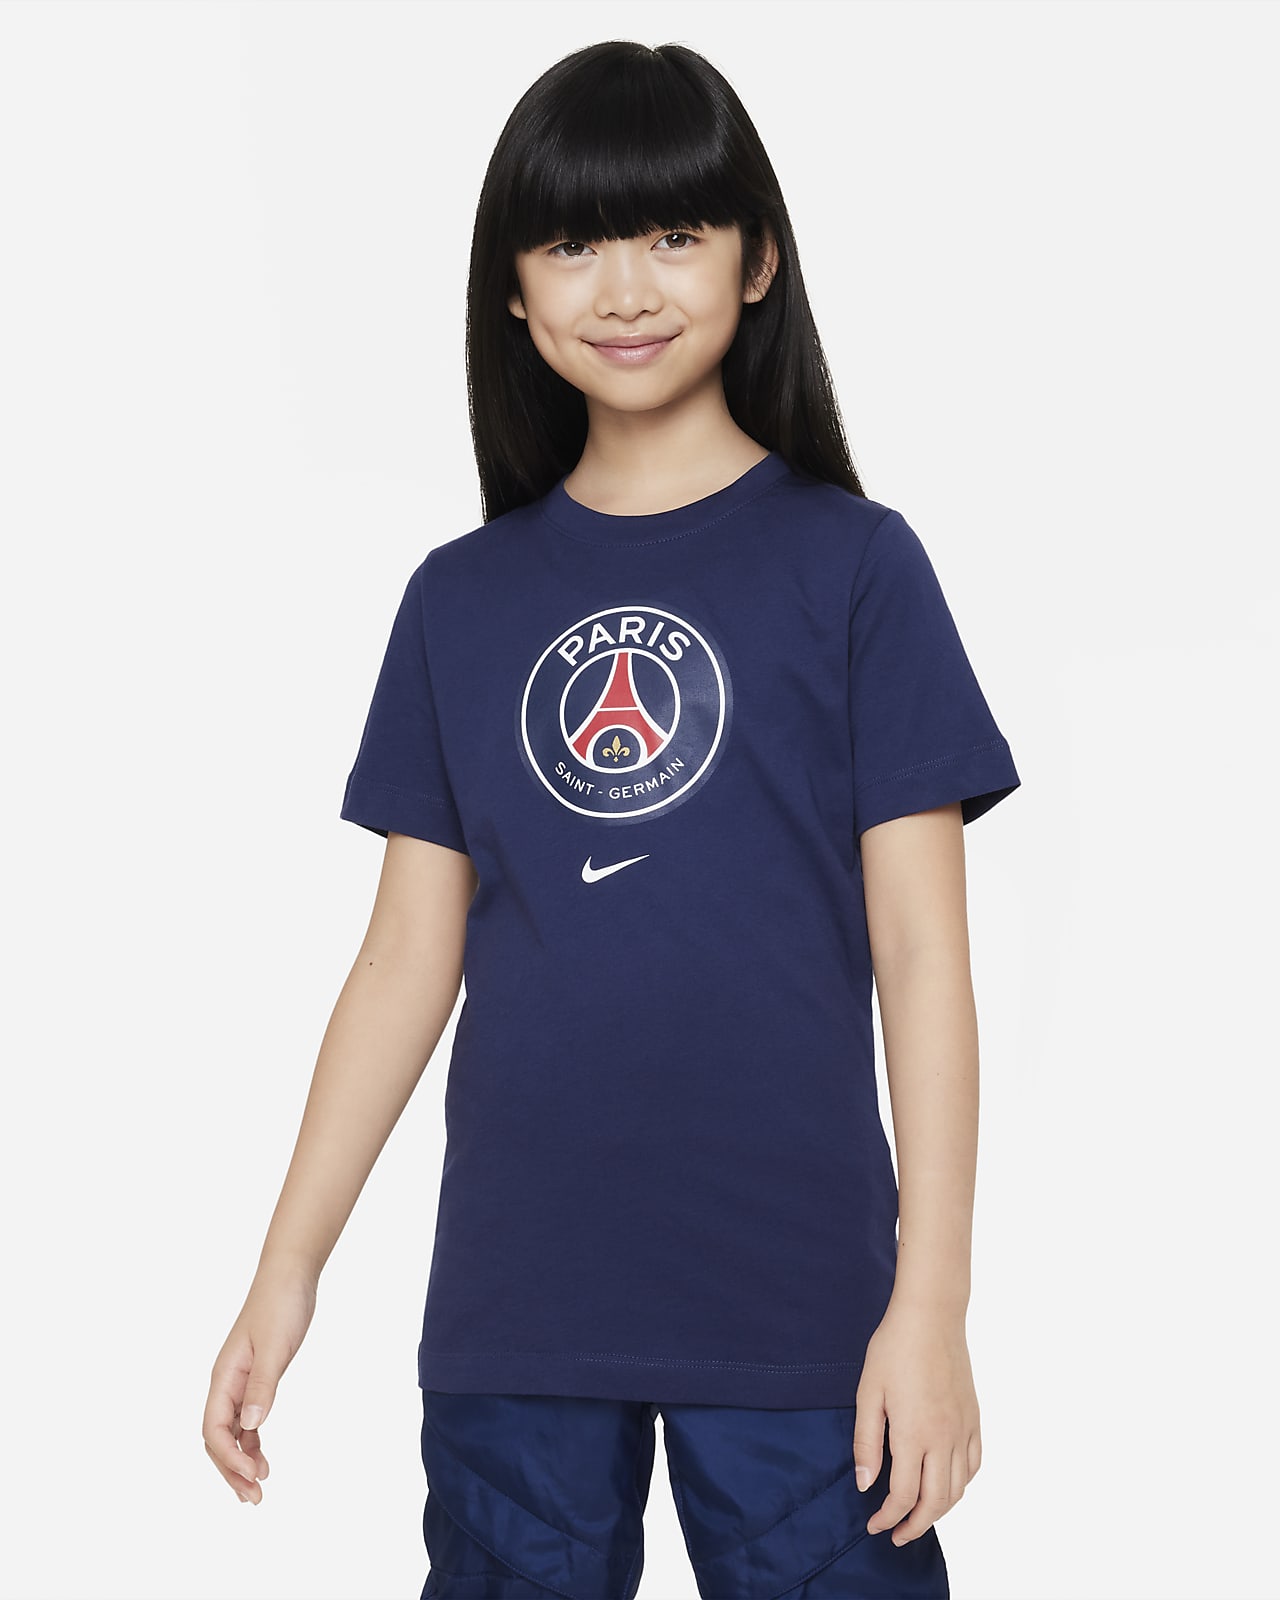 sandaler generation Hellere Paris Saint-Germain Crest Nike-T-shirt til større børn. Nike DK